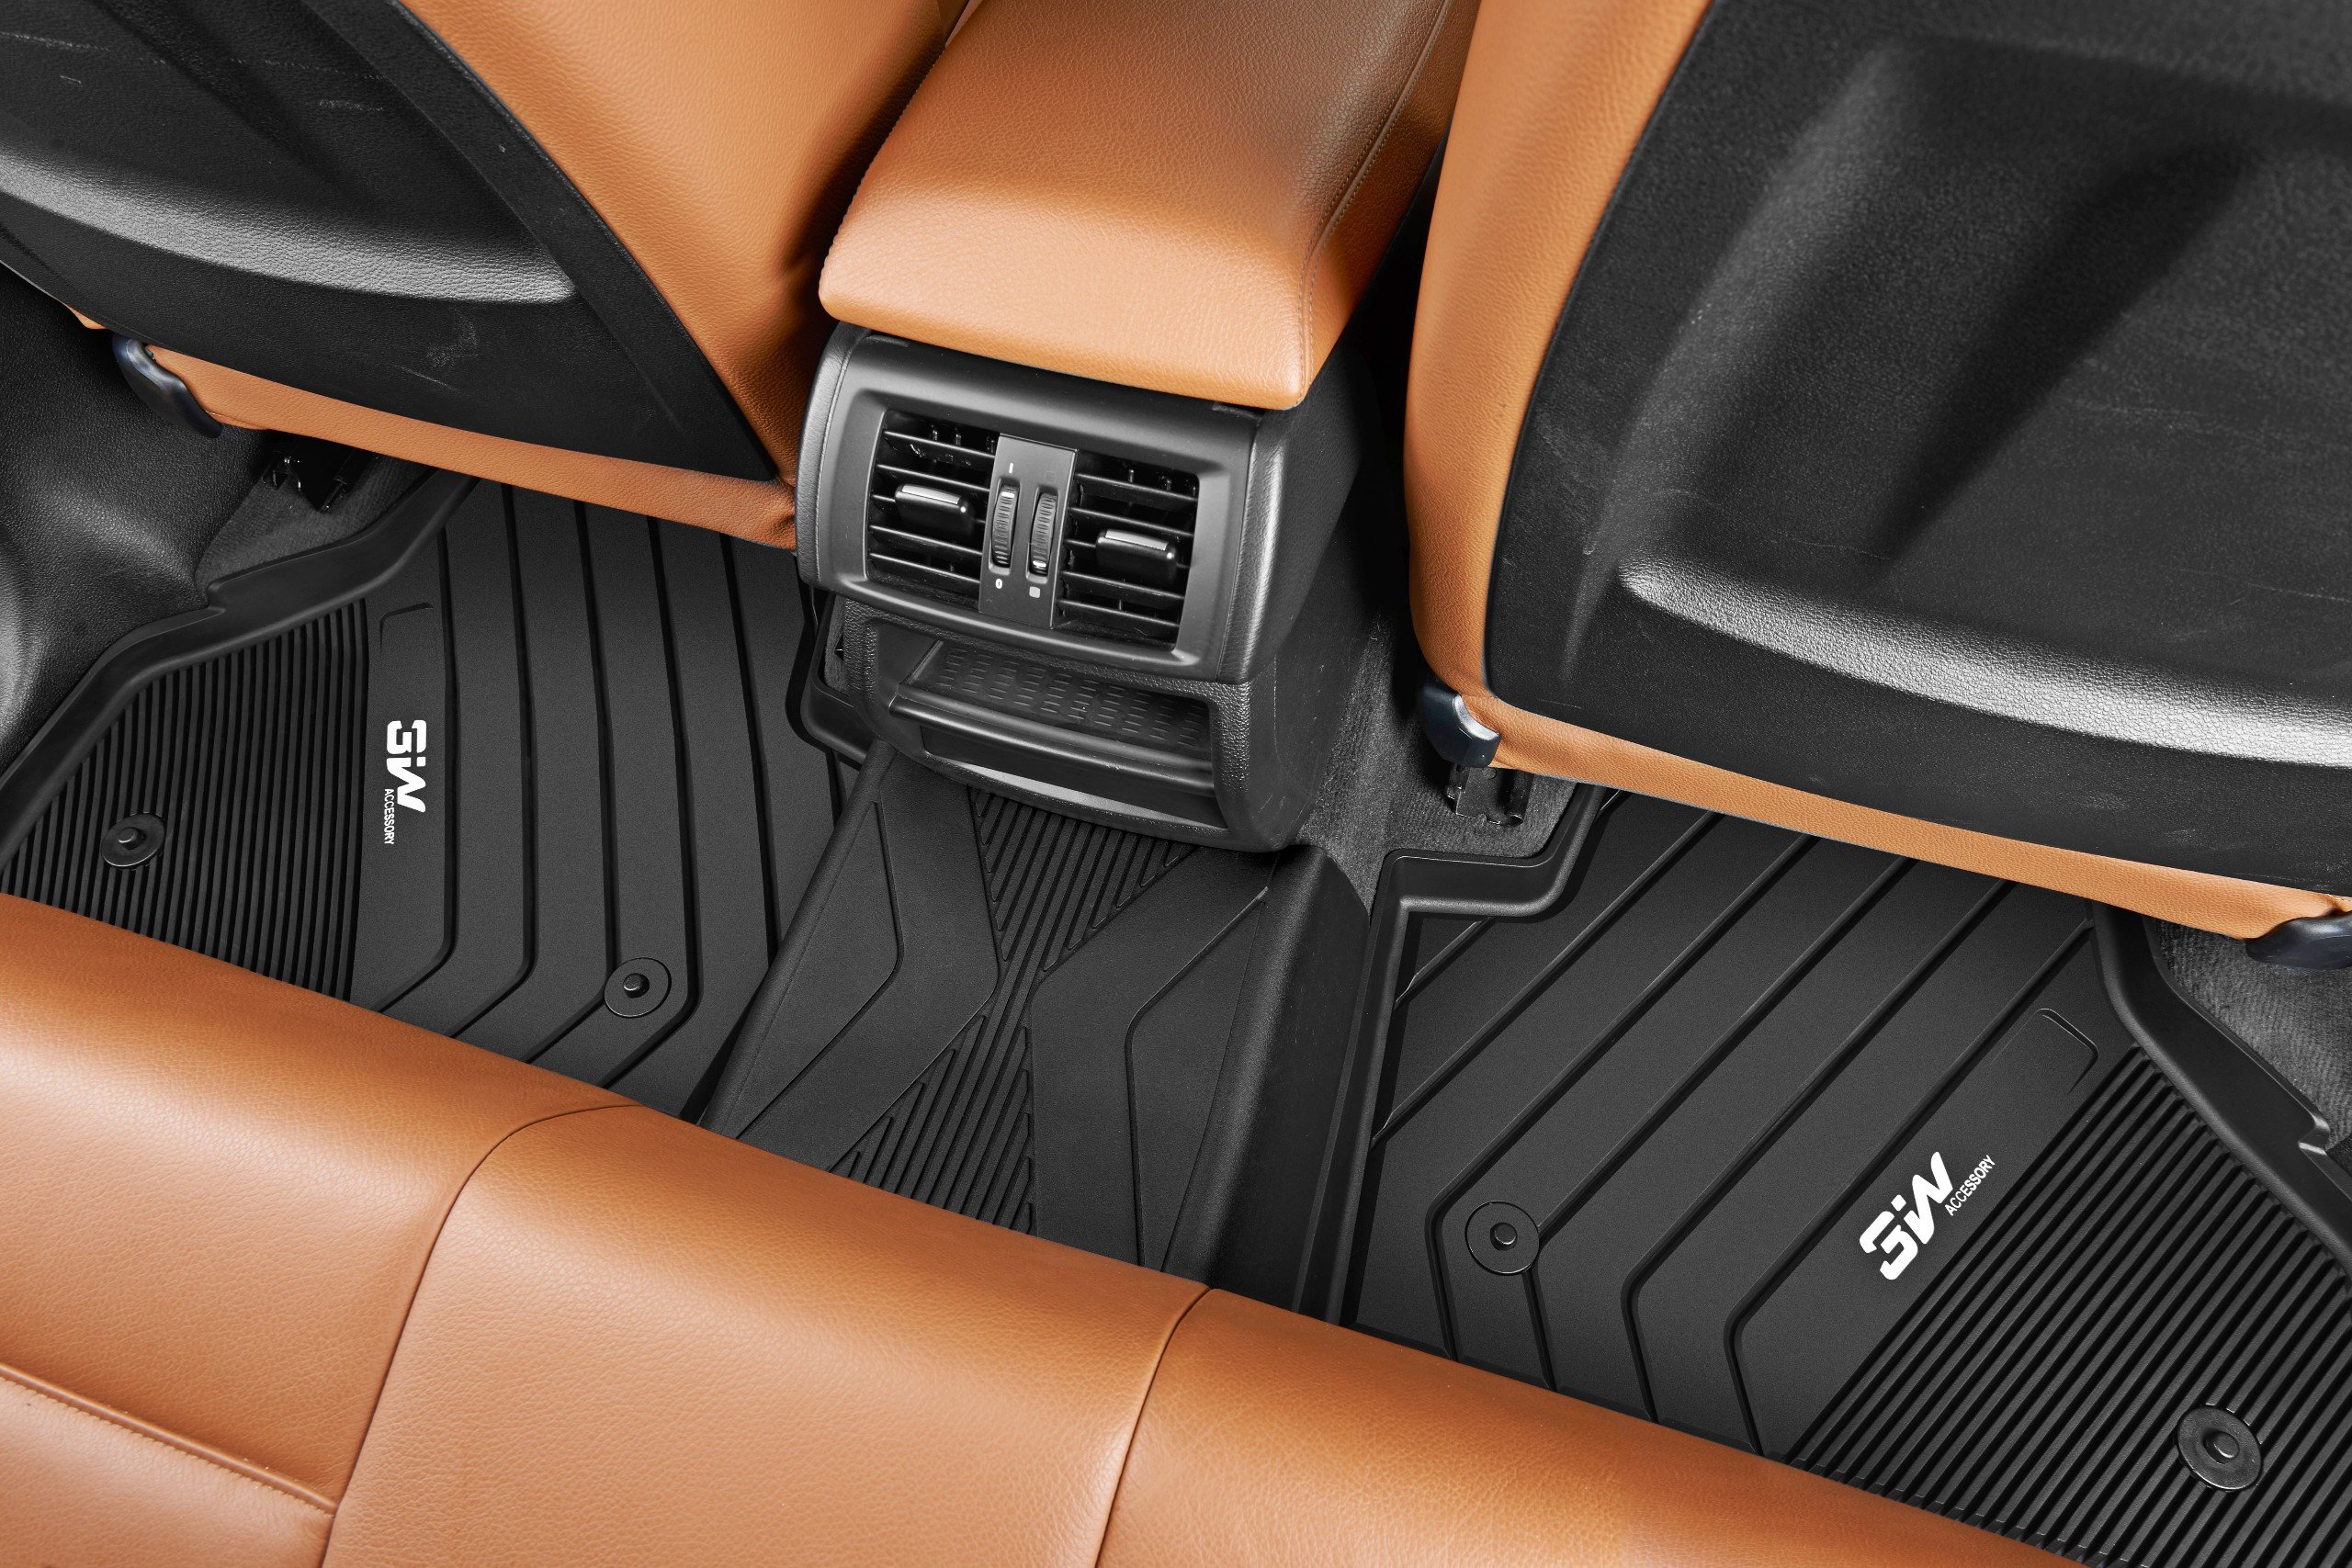 Thảm lót sàn xe ô tô BMW X5 2013-3018 / Lux sa Nhãn hiệu Macsim 3W chất liệu nhựa TPE đúc khuôn cao cấp - màu đen